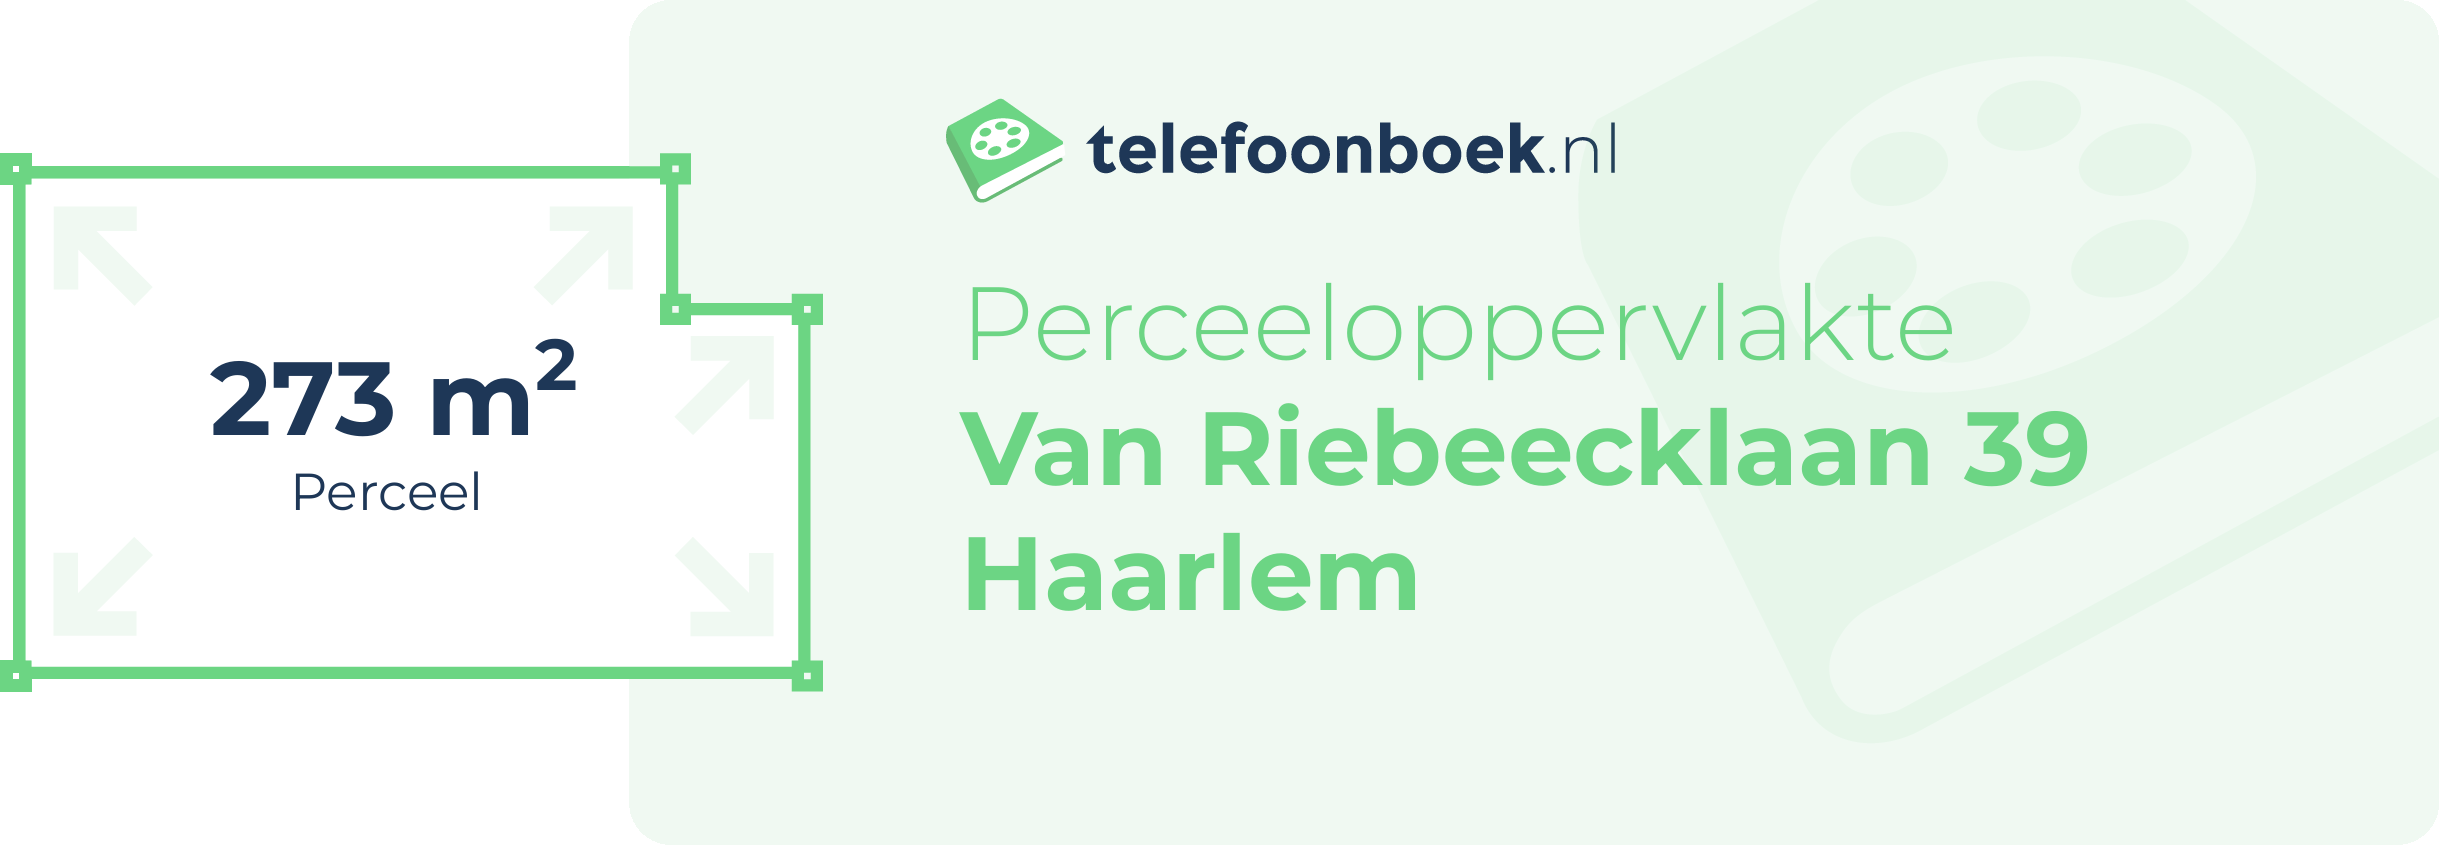 Perceeloppervlakte Van Riebeecklaan 39 Haarlem